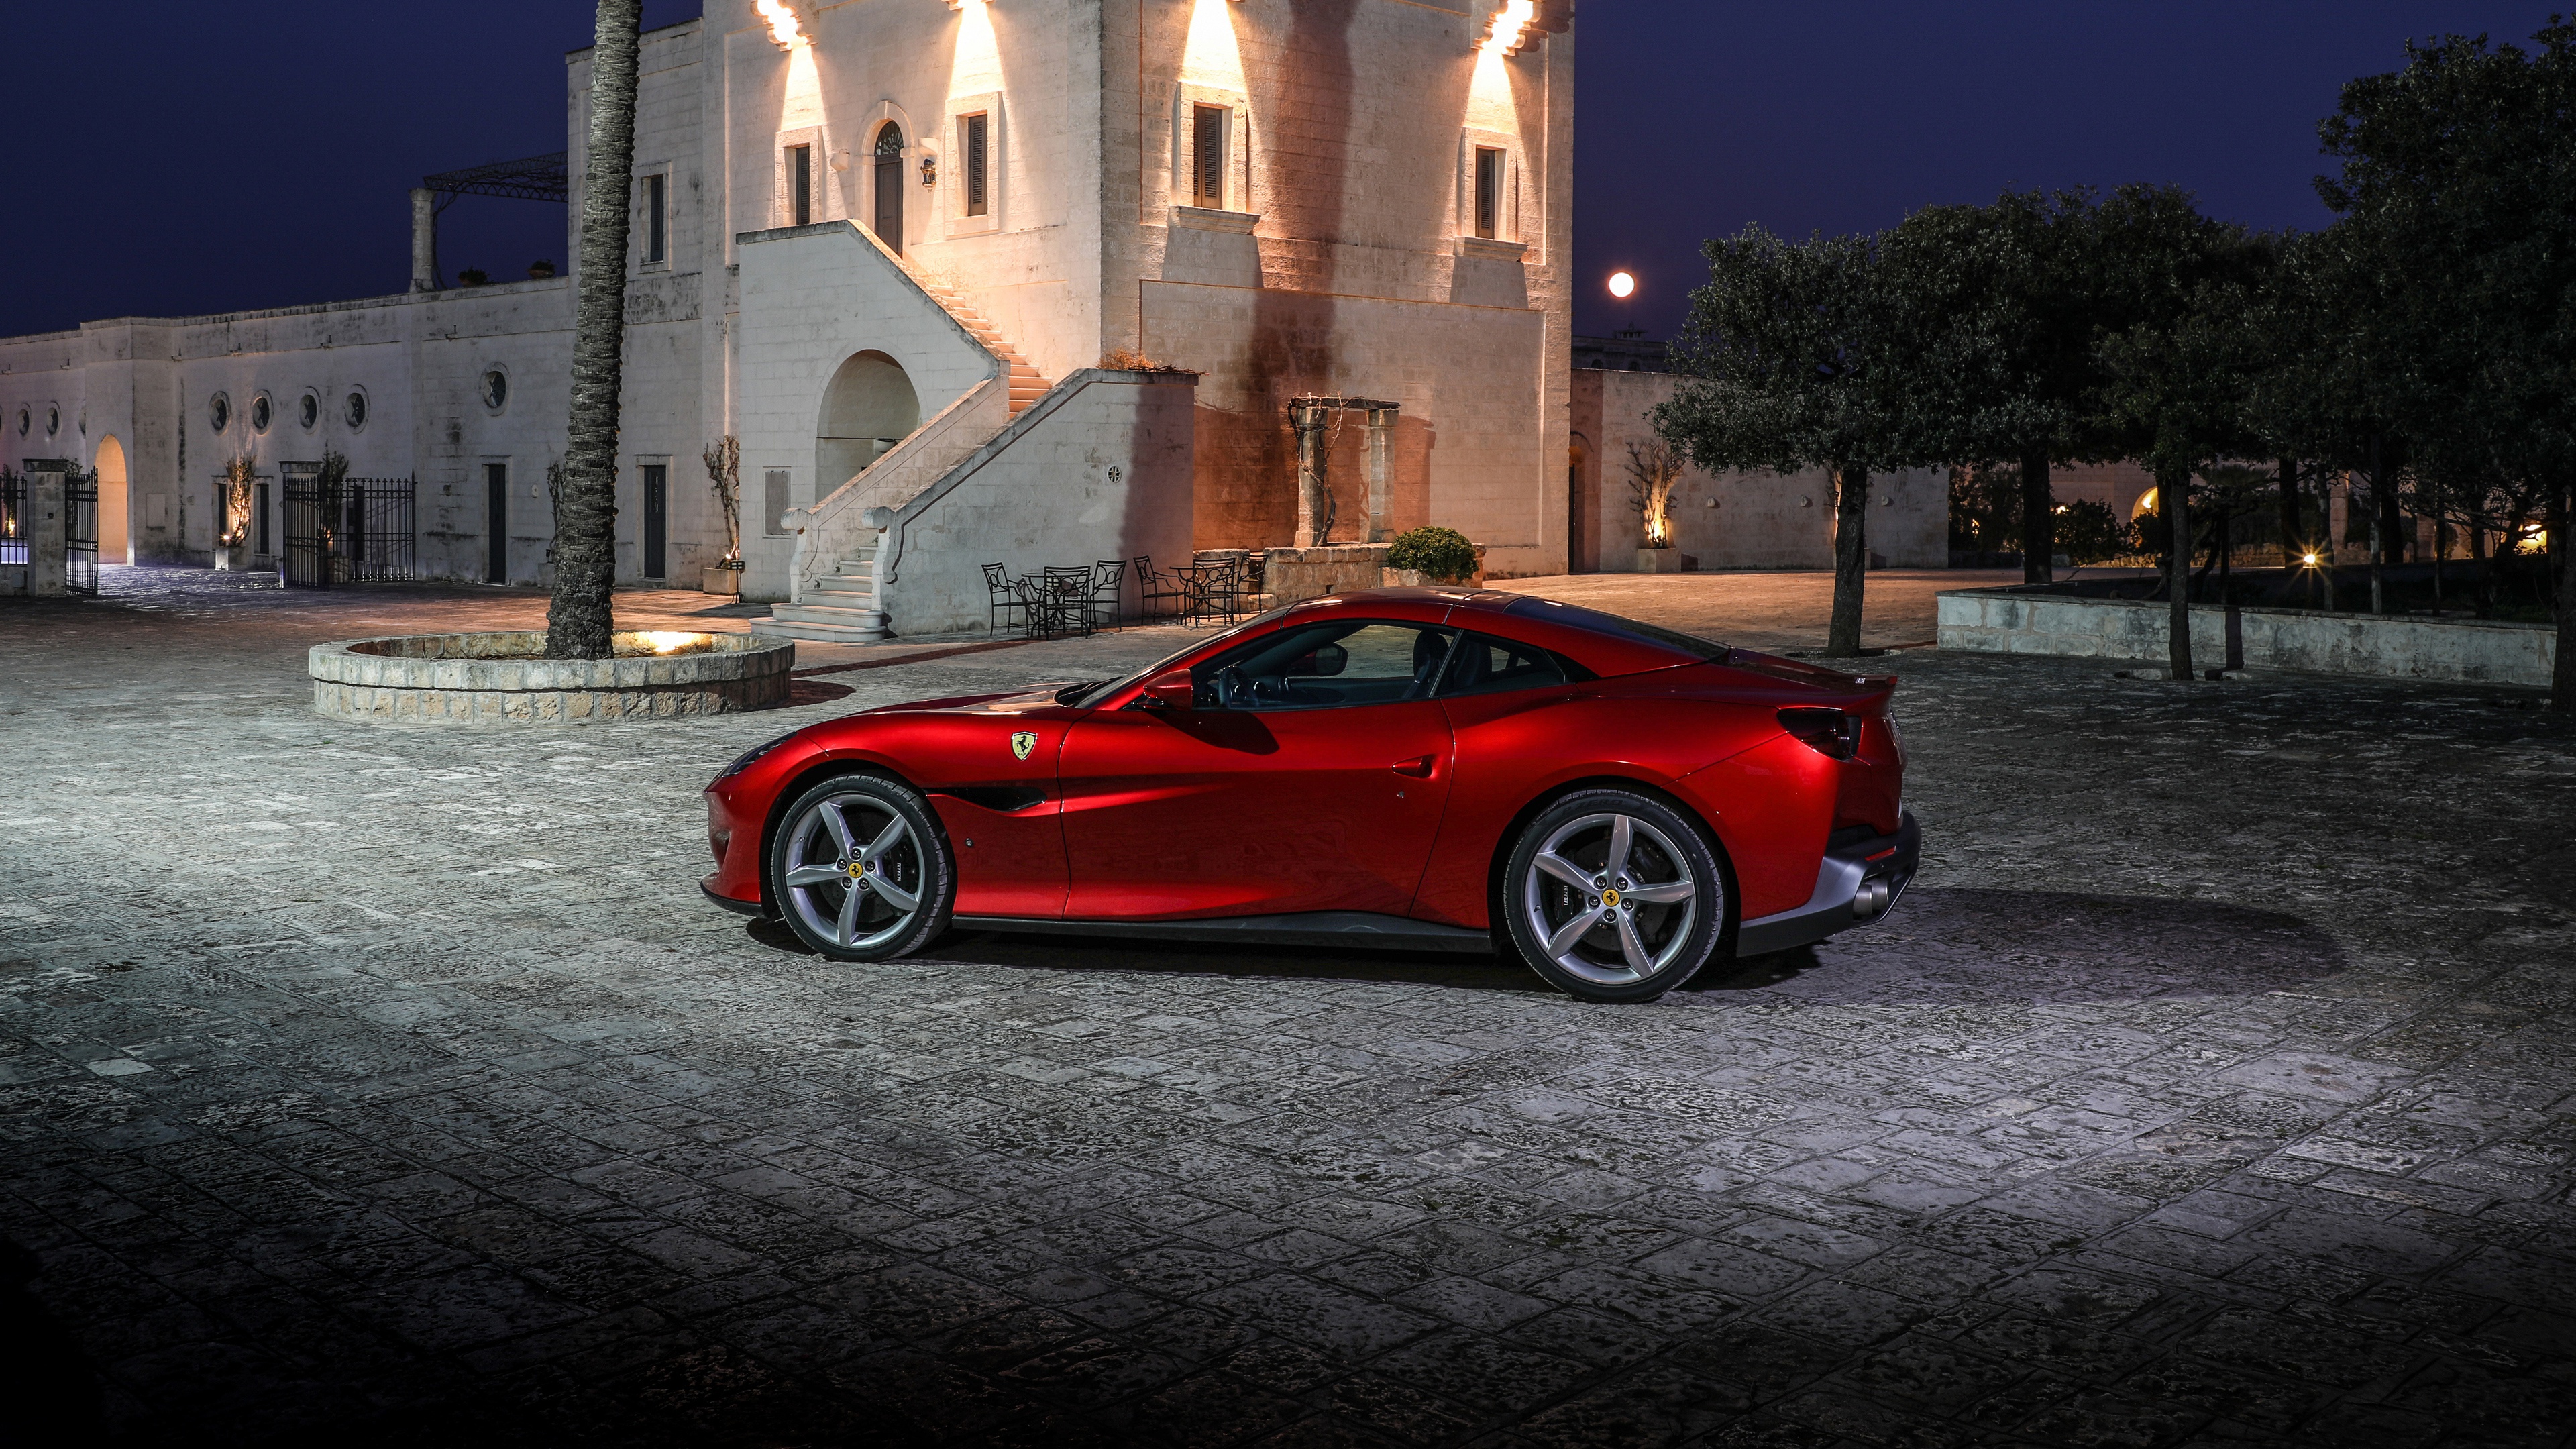 Meilleurs fonds d'écran Ferrari Porto Fino pour l'écran du téléphone